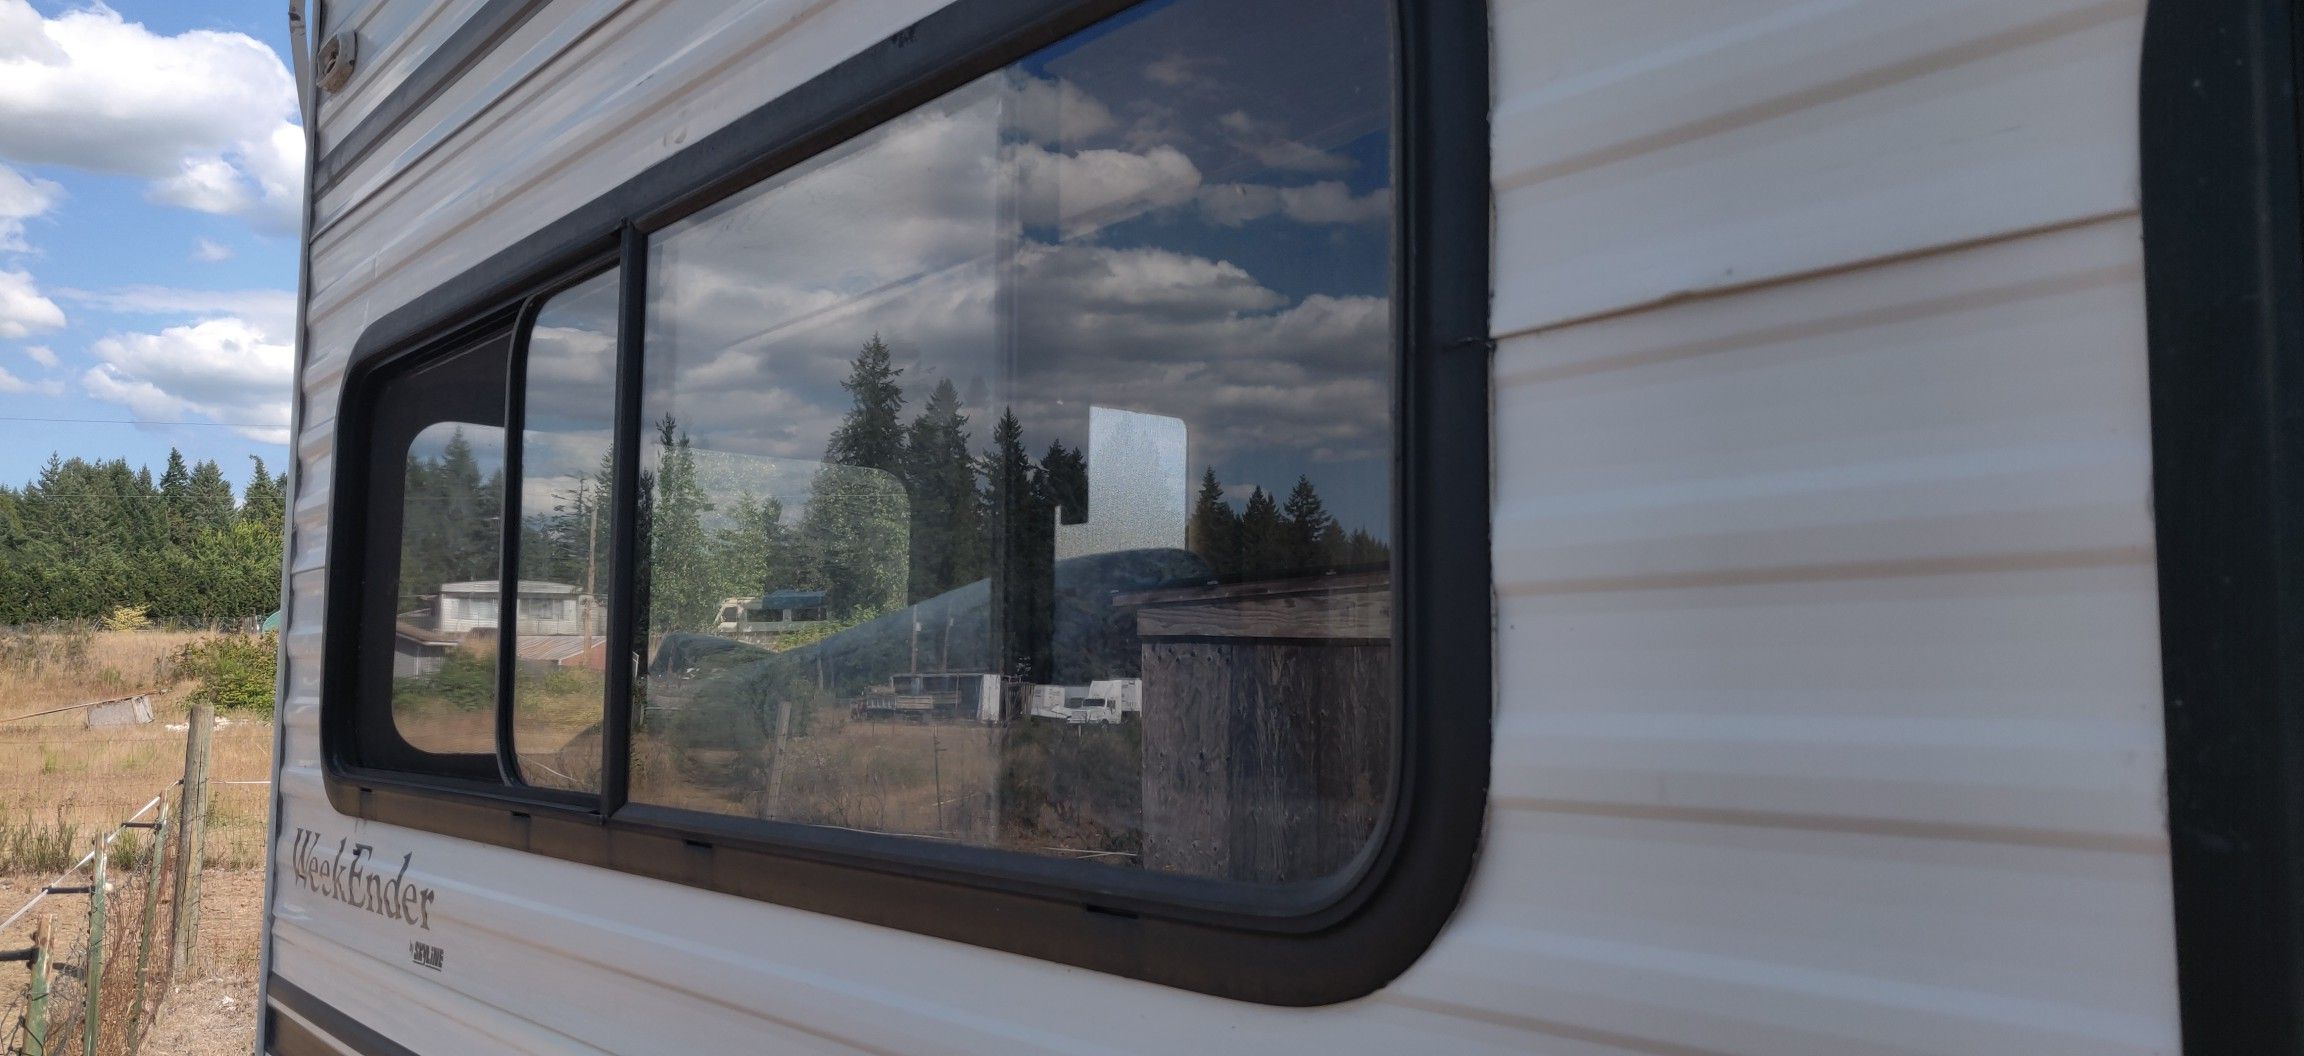 Camper windows & screens